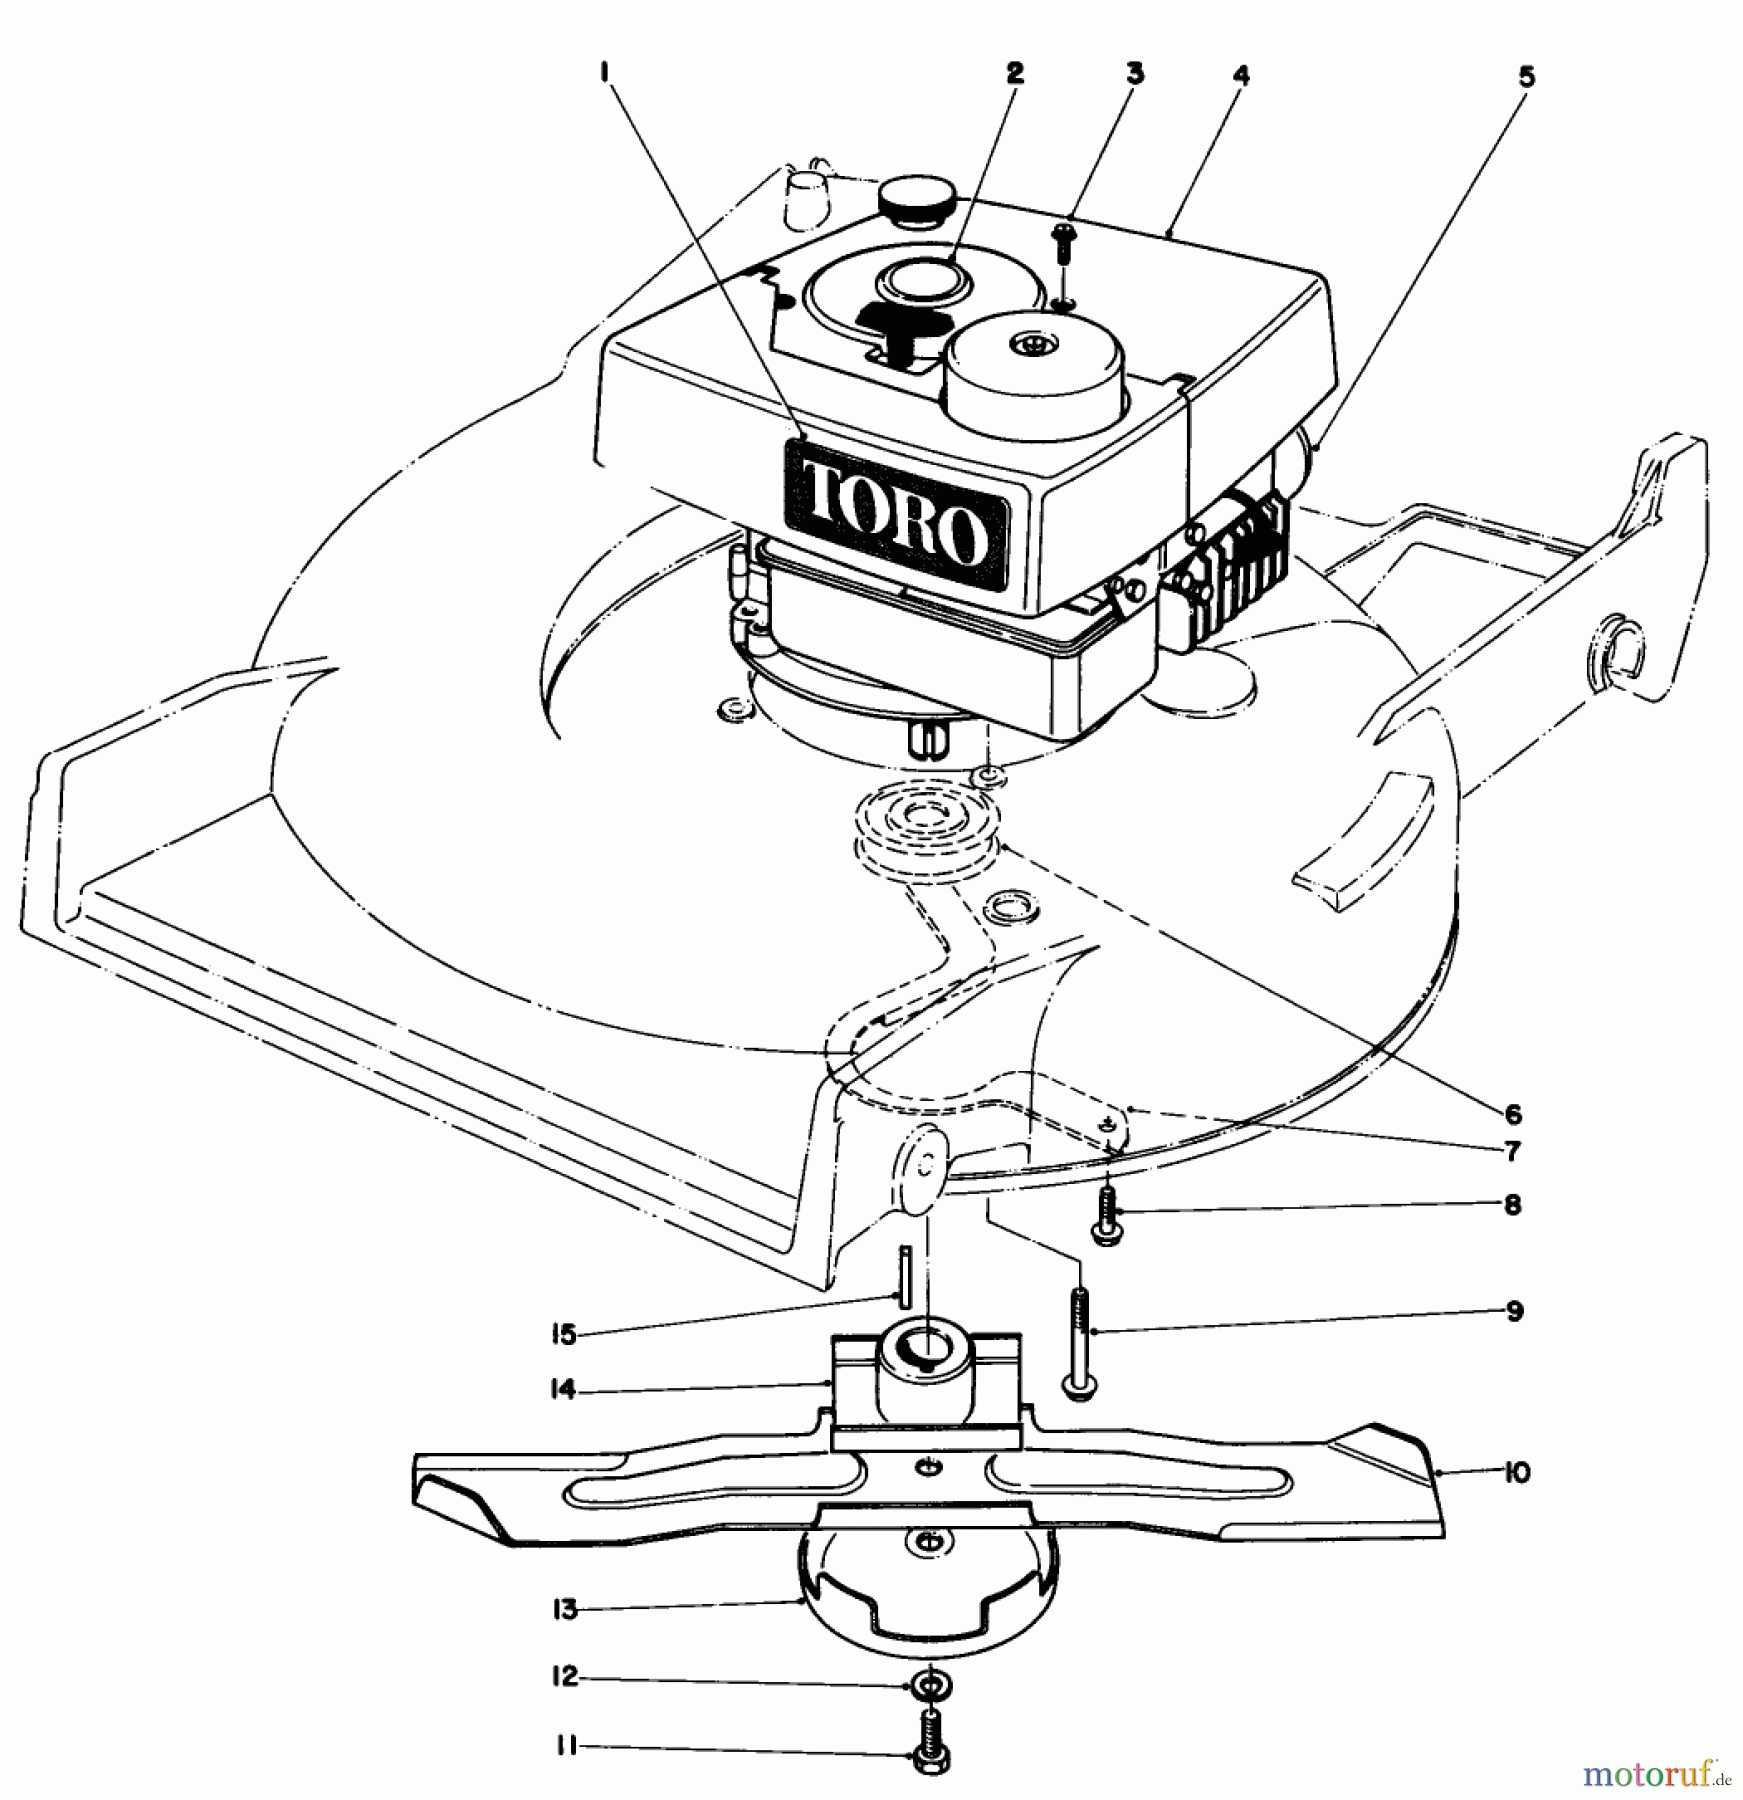  Toro Neu Mowers, Walk-Behind Seite 1 20785 - Toro Lawnmower, 1982 (2000001-2999999) ENGINE ASSEMBLY